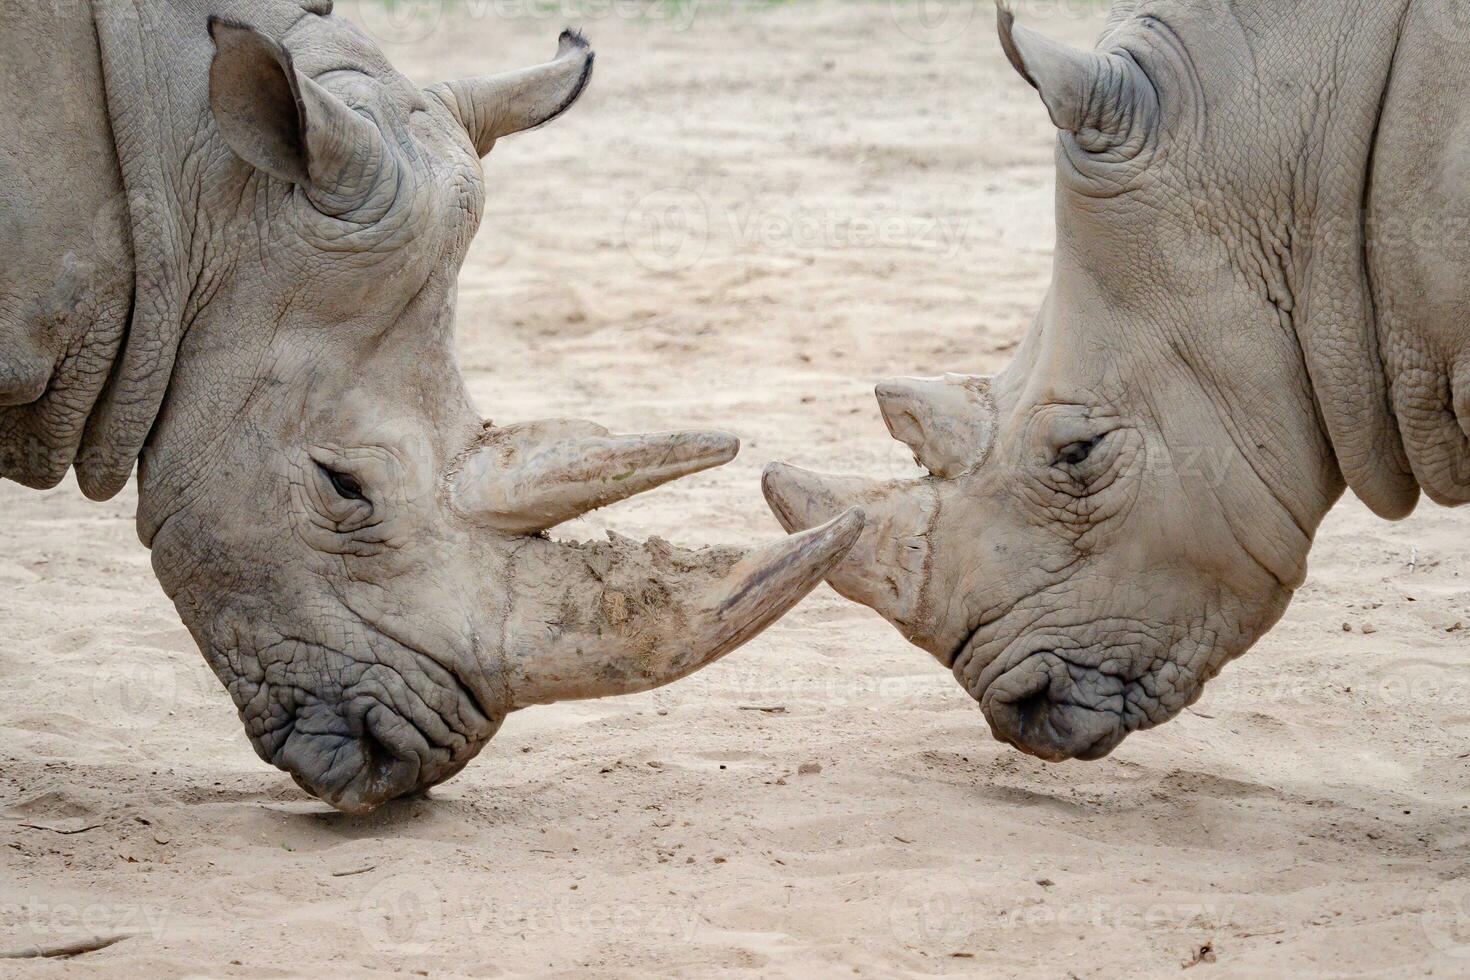 del Sur blanco rinoceronte. críticamente en peligro de extinción animal especies. foto